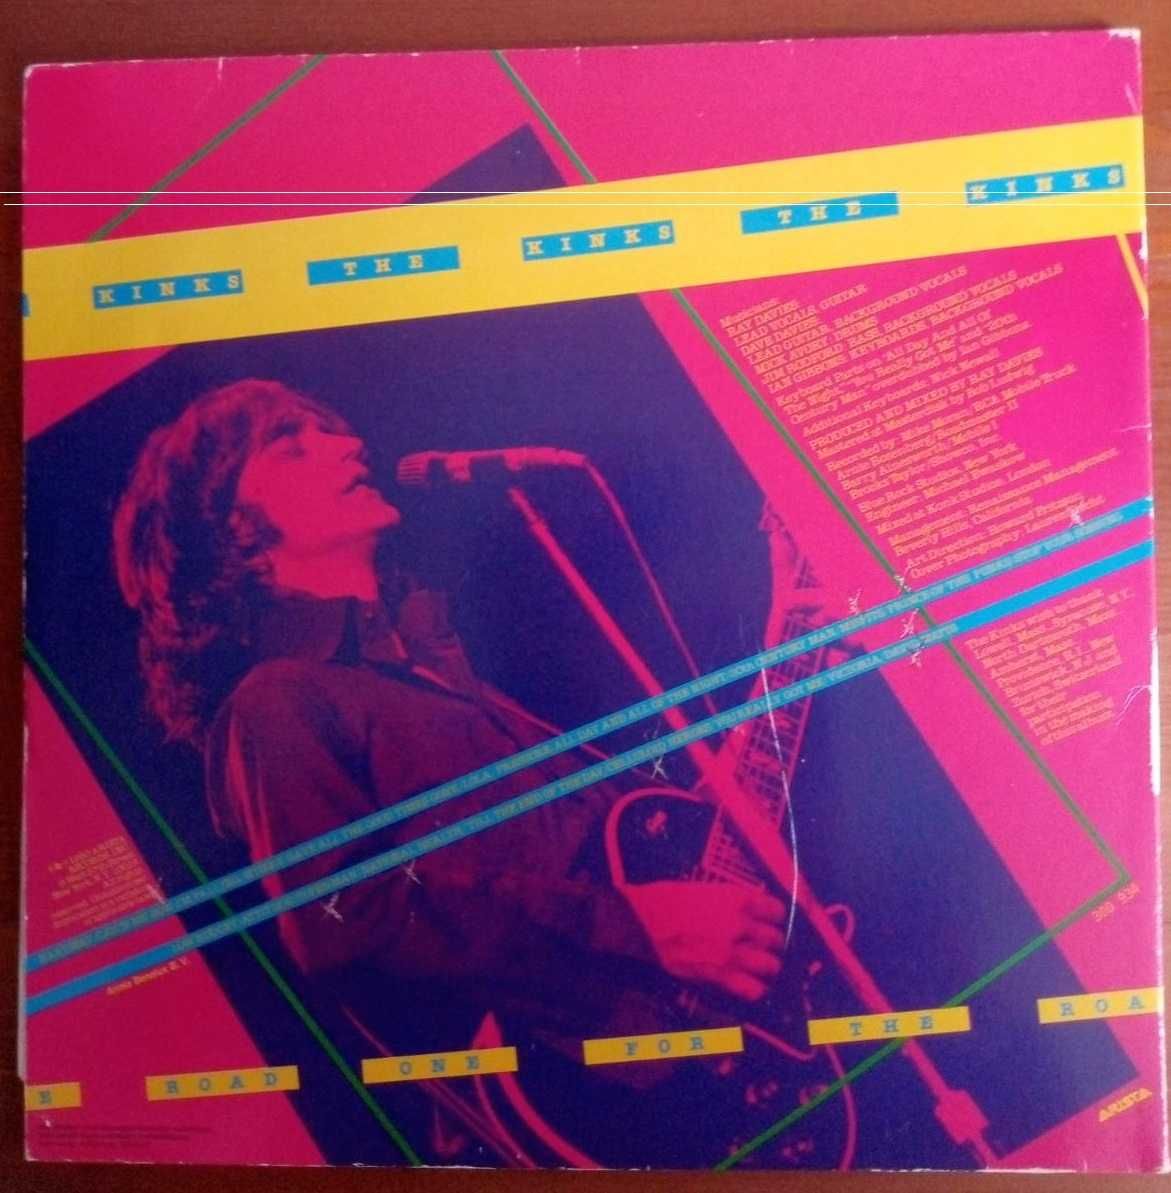 The Kinks - One for the road  - 2LP - podwójny album płyta winylowa